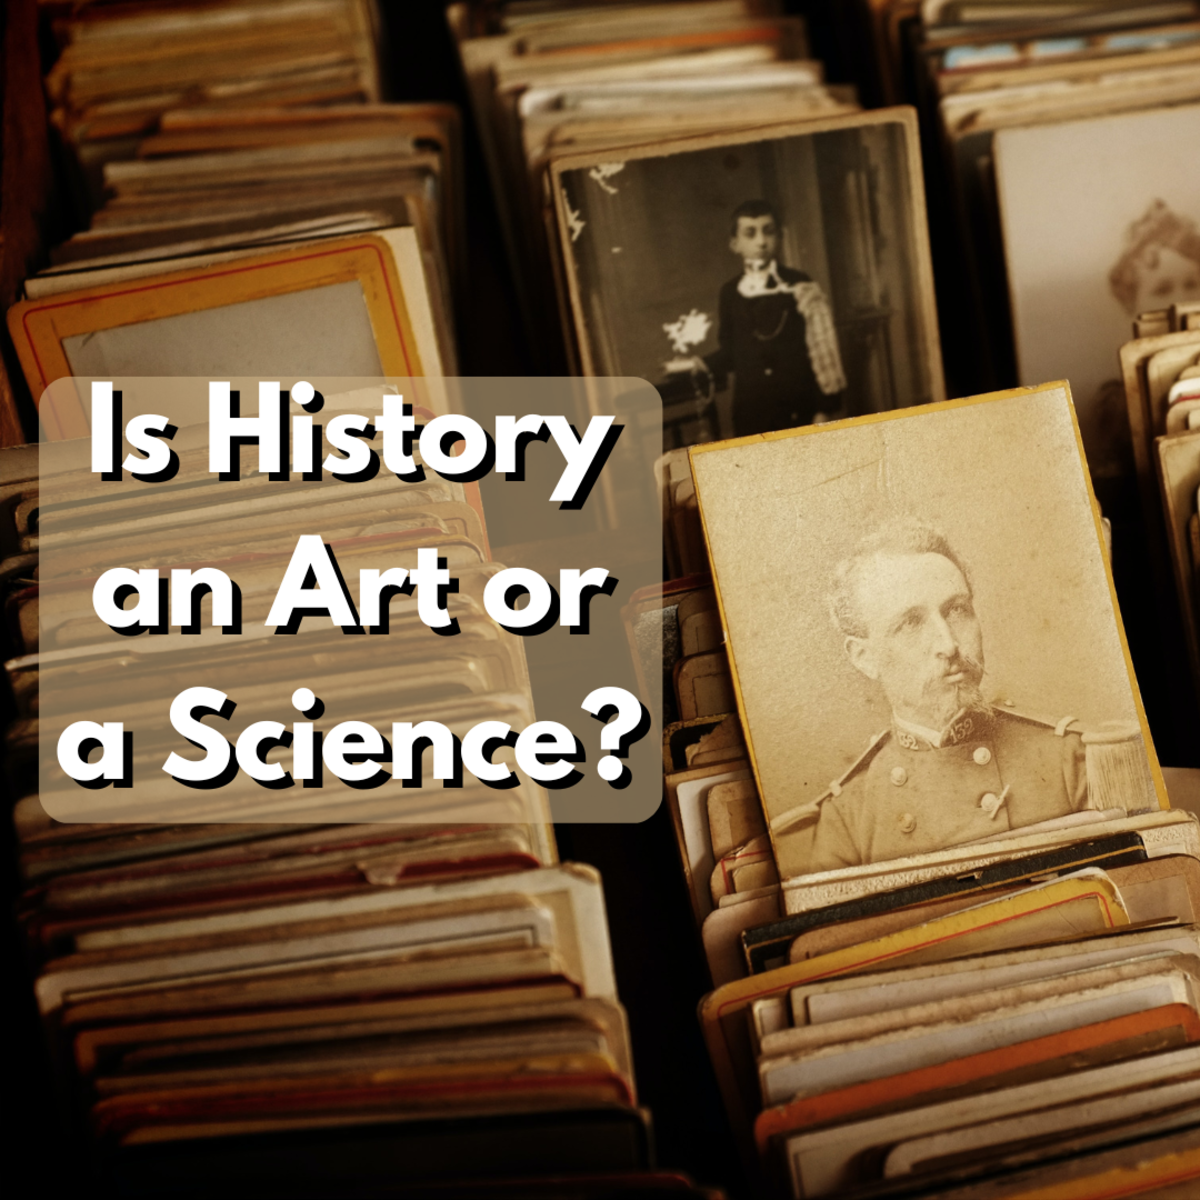 继续往下读，了解历史研究和分析的过程，以及艺术和科学在历史学科中的界限在哪里相遇。